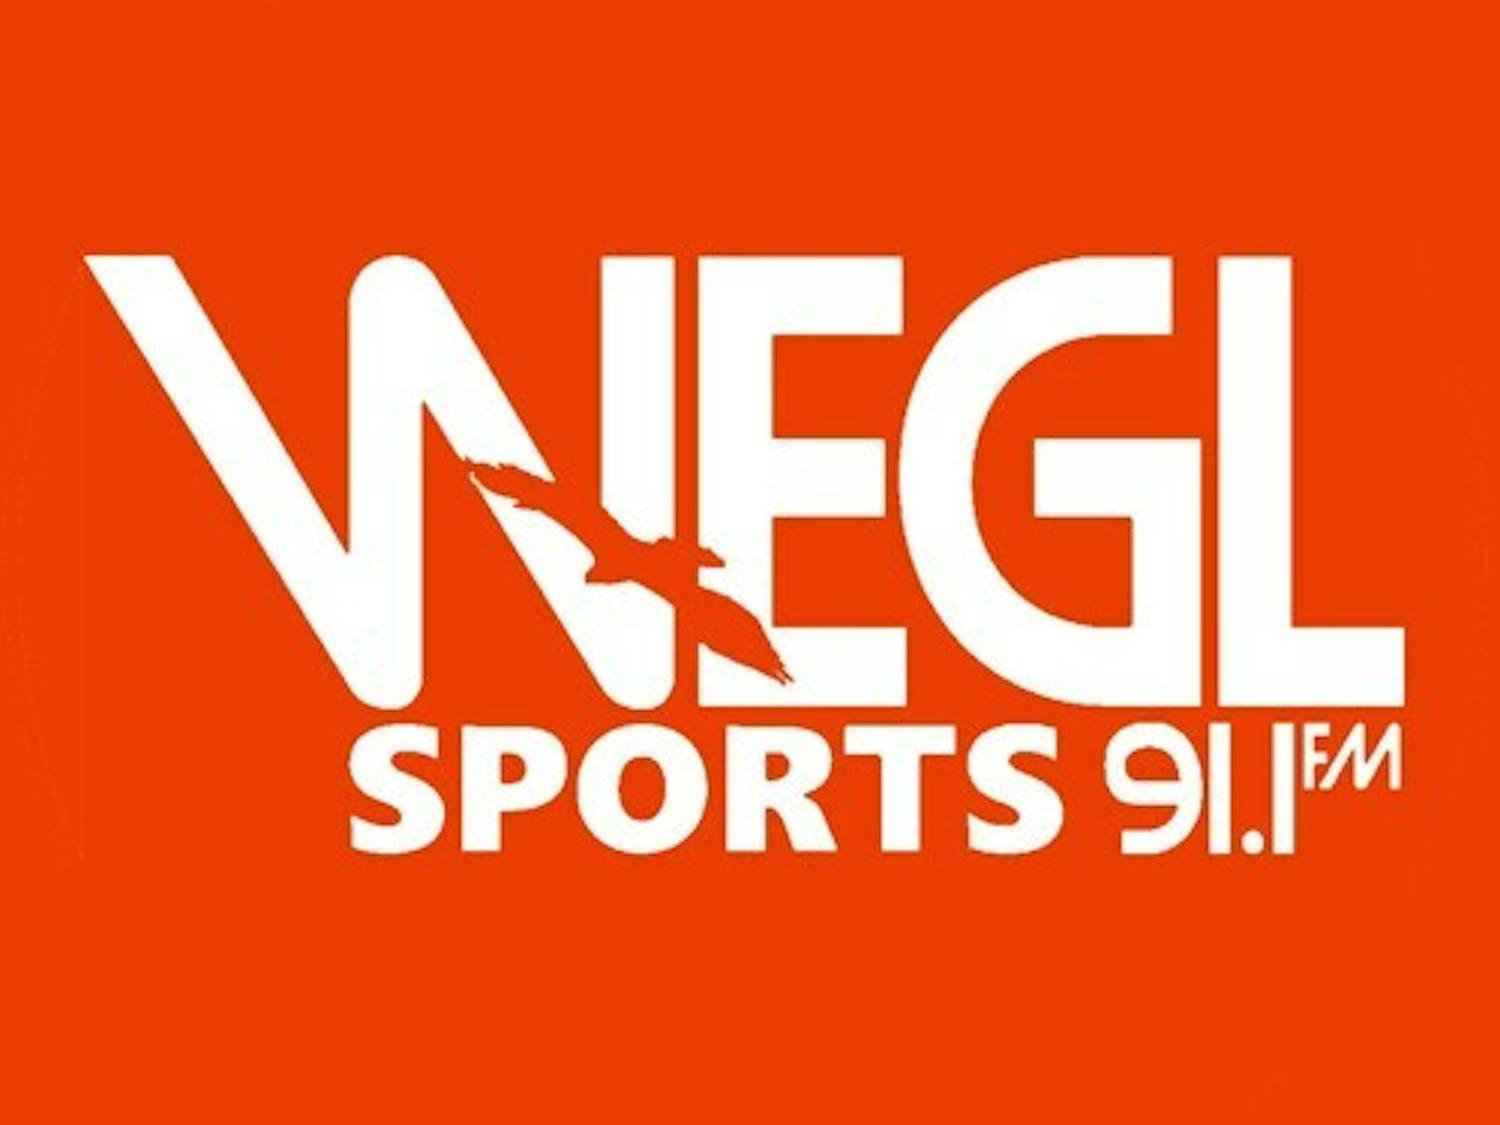 WEGL Sports.jpg